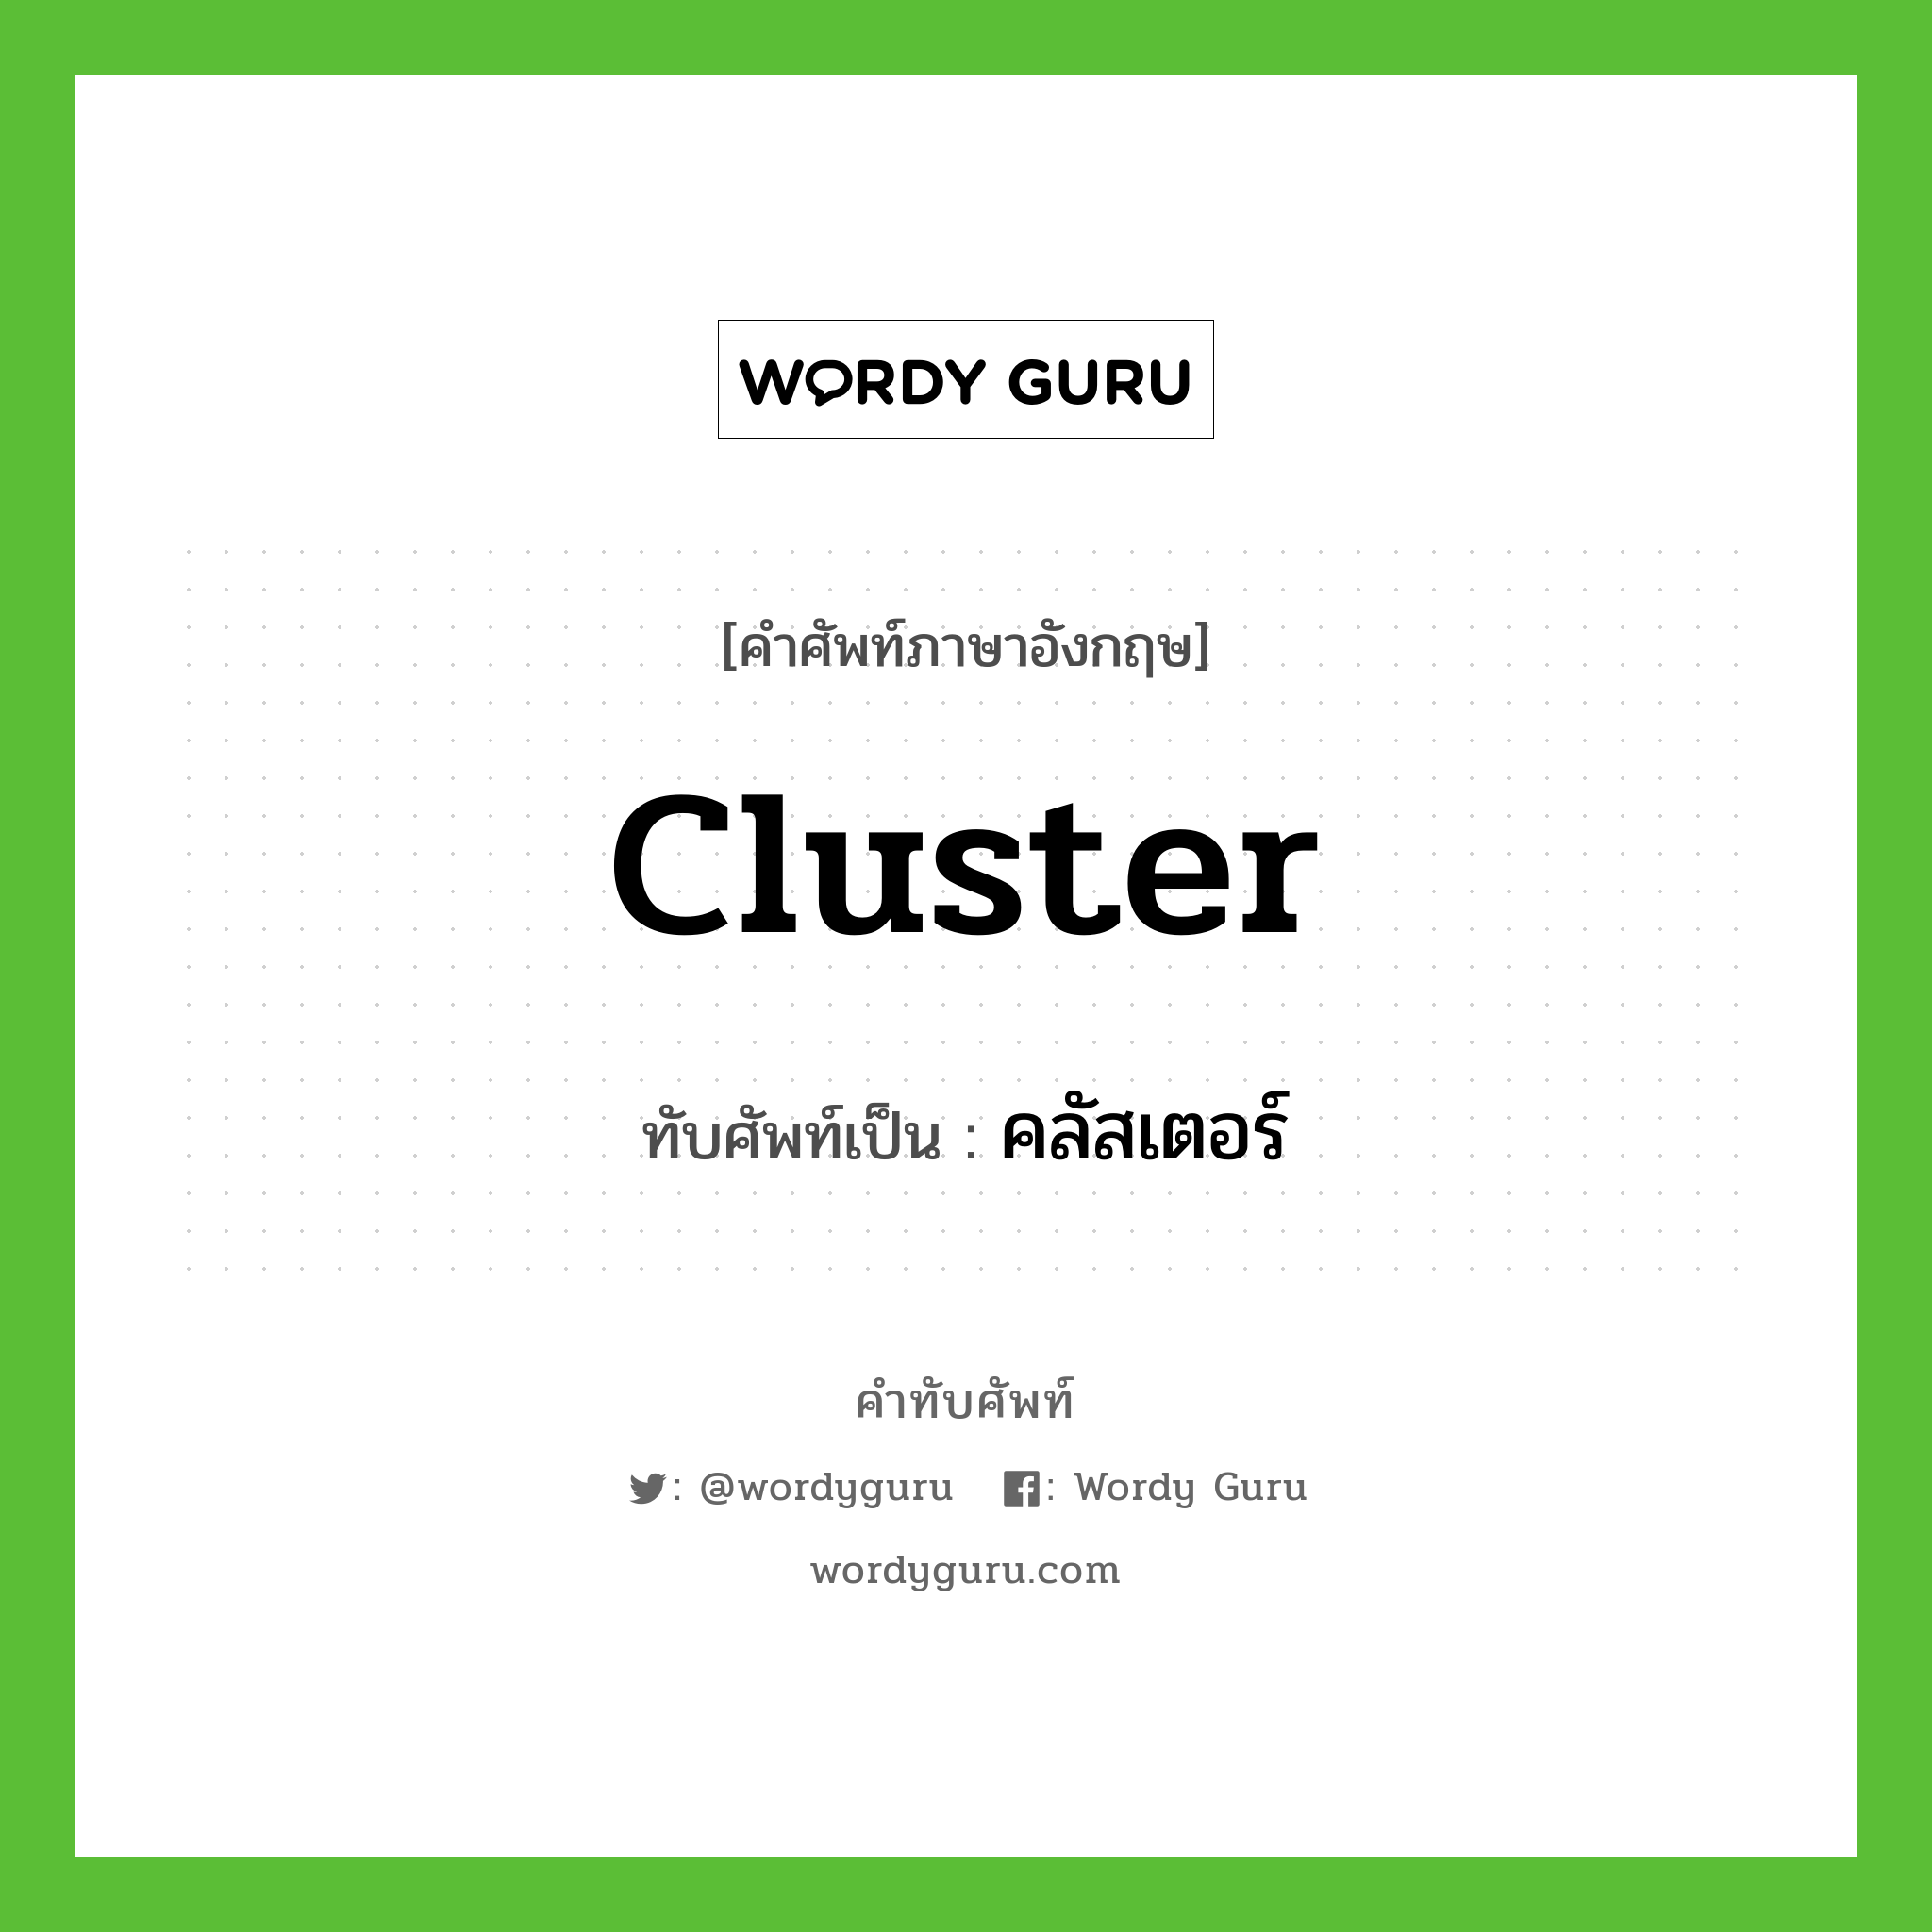 คลัสเตอร์ เขียนอย่างไร?, คำศัพท์ภาษาอังกฤษ คลัสเตอร์ ทับศัพท์เป็น cluster